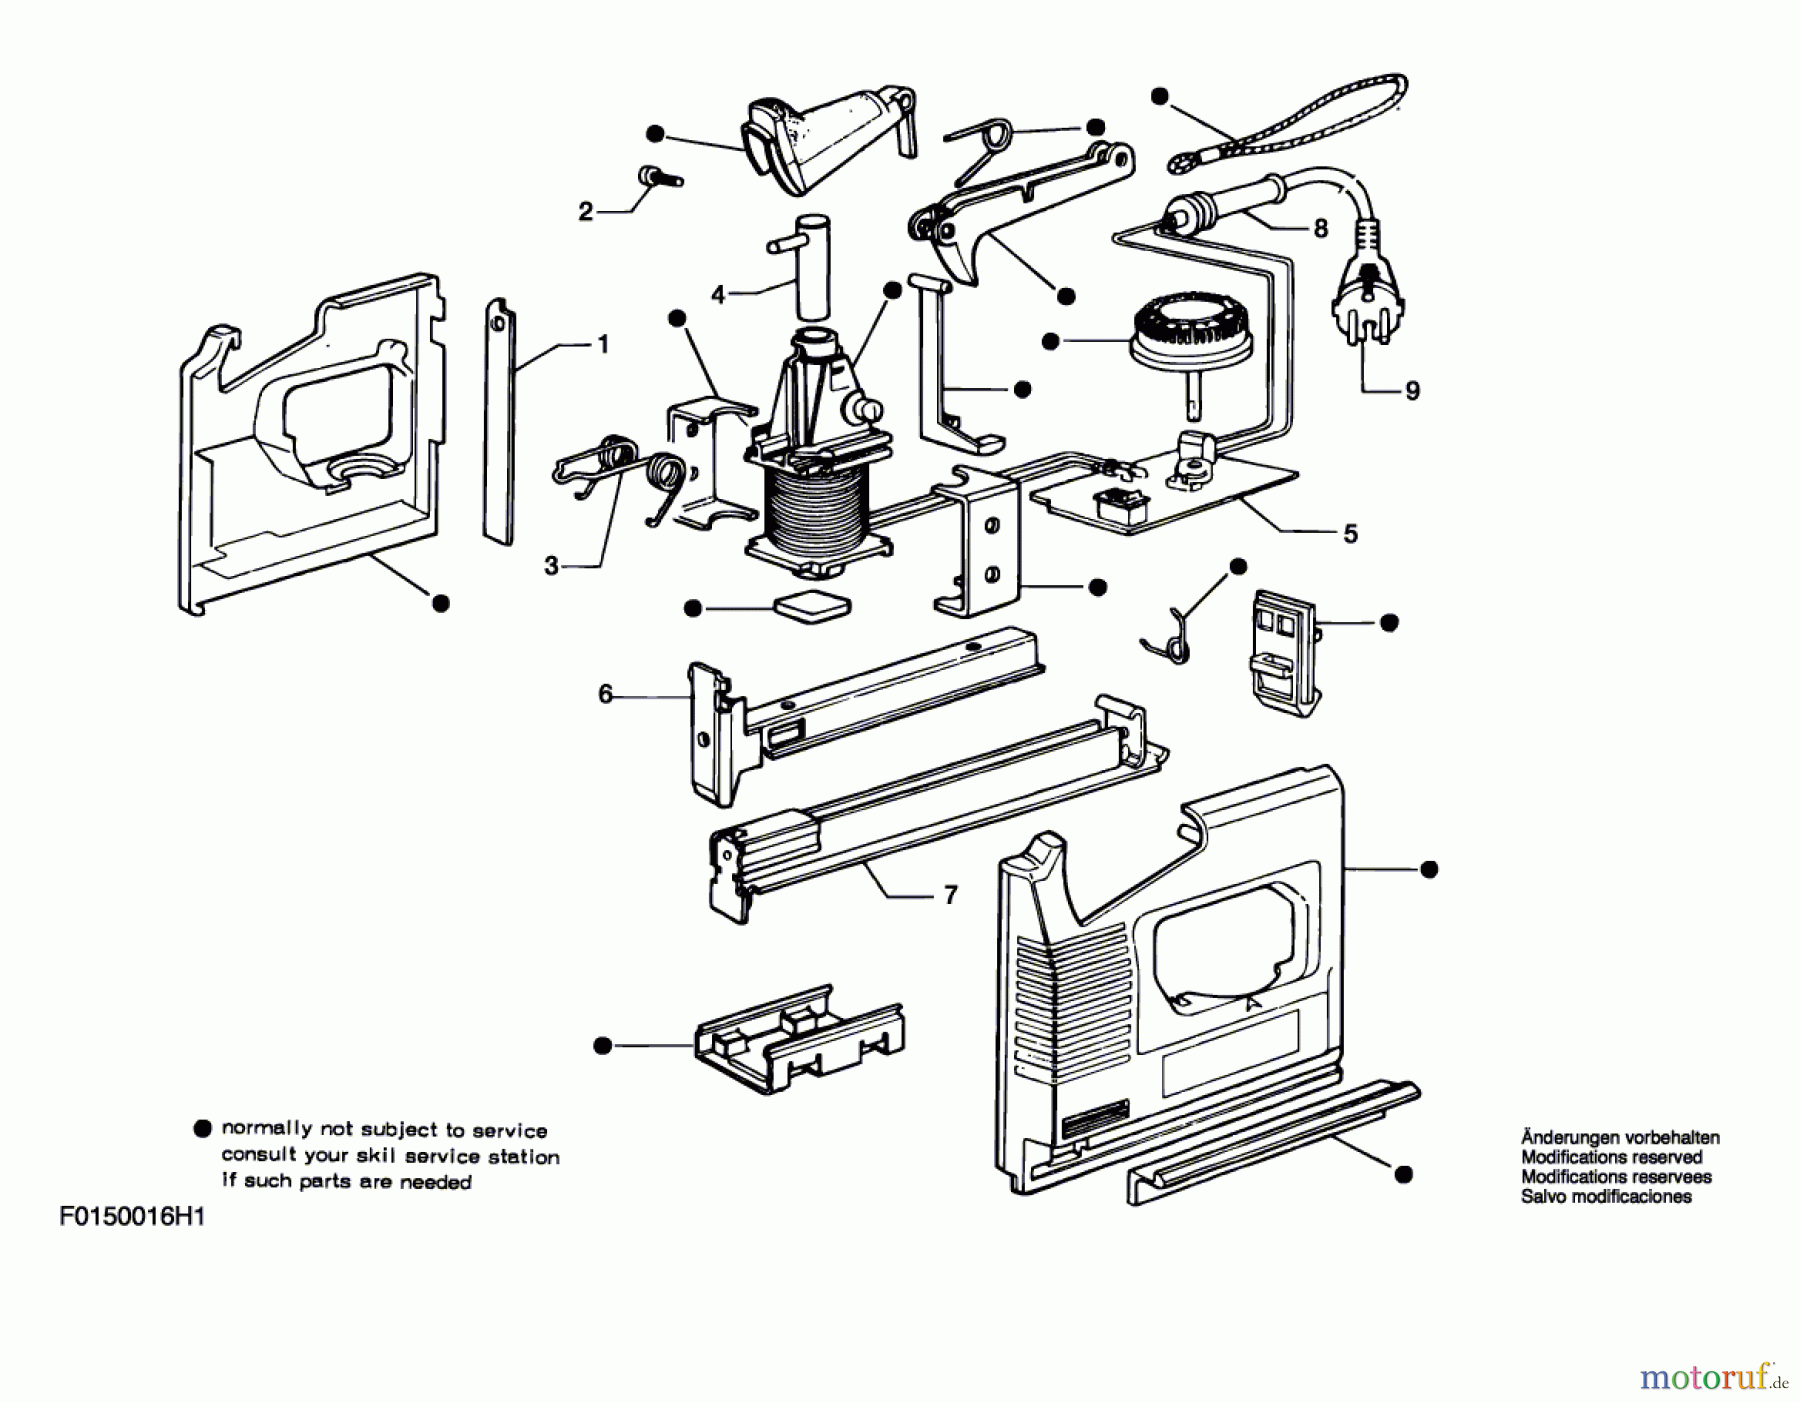  Bosch Werkzeug Hw-Tacker 16H1 Seite 1